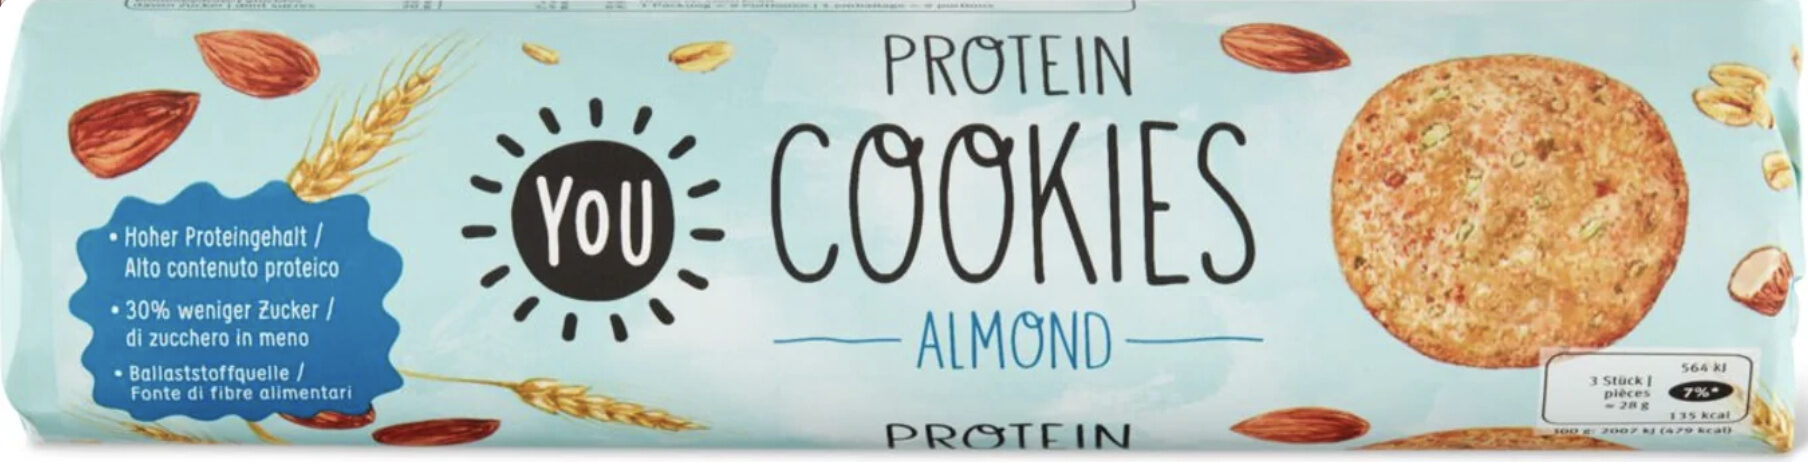 Protein Cookies Almond - Prodotto - fr